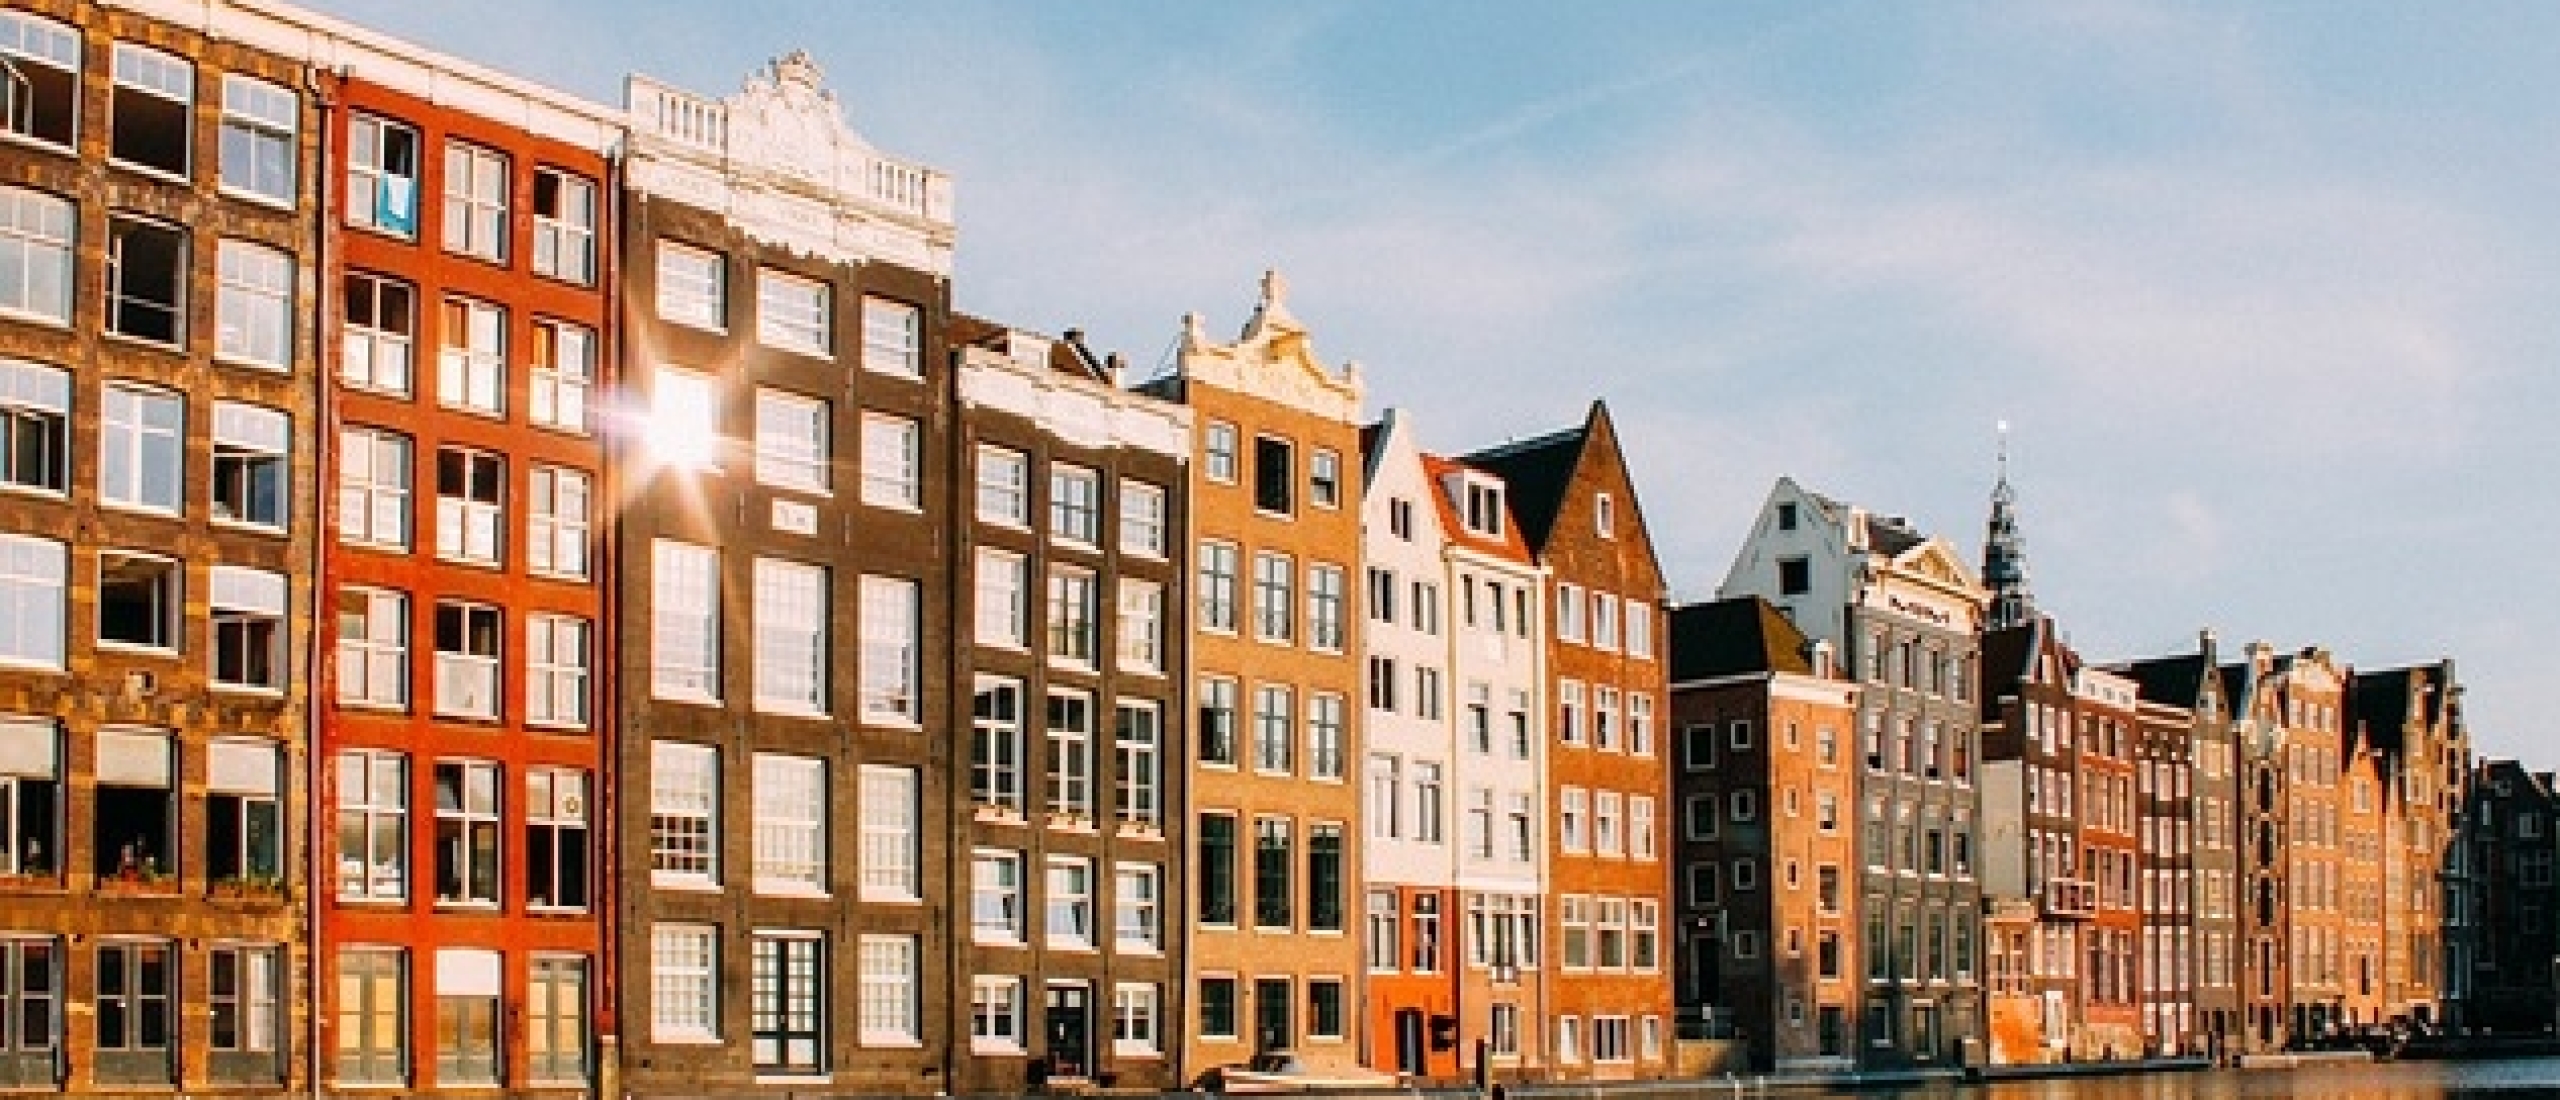 Huizenprijzen door het dak de komende jaren? Ontcijfering van de Nederlandse Woningmarktcrisis